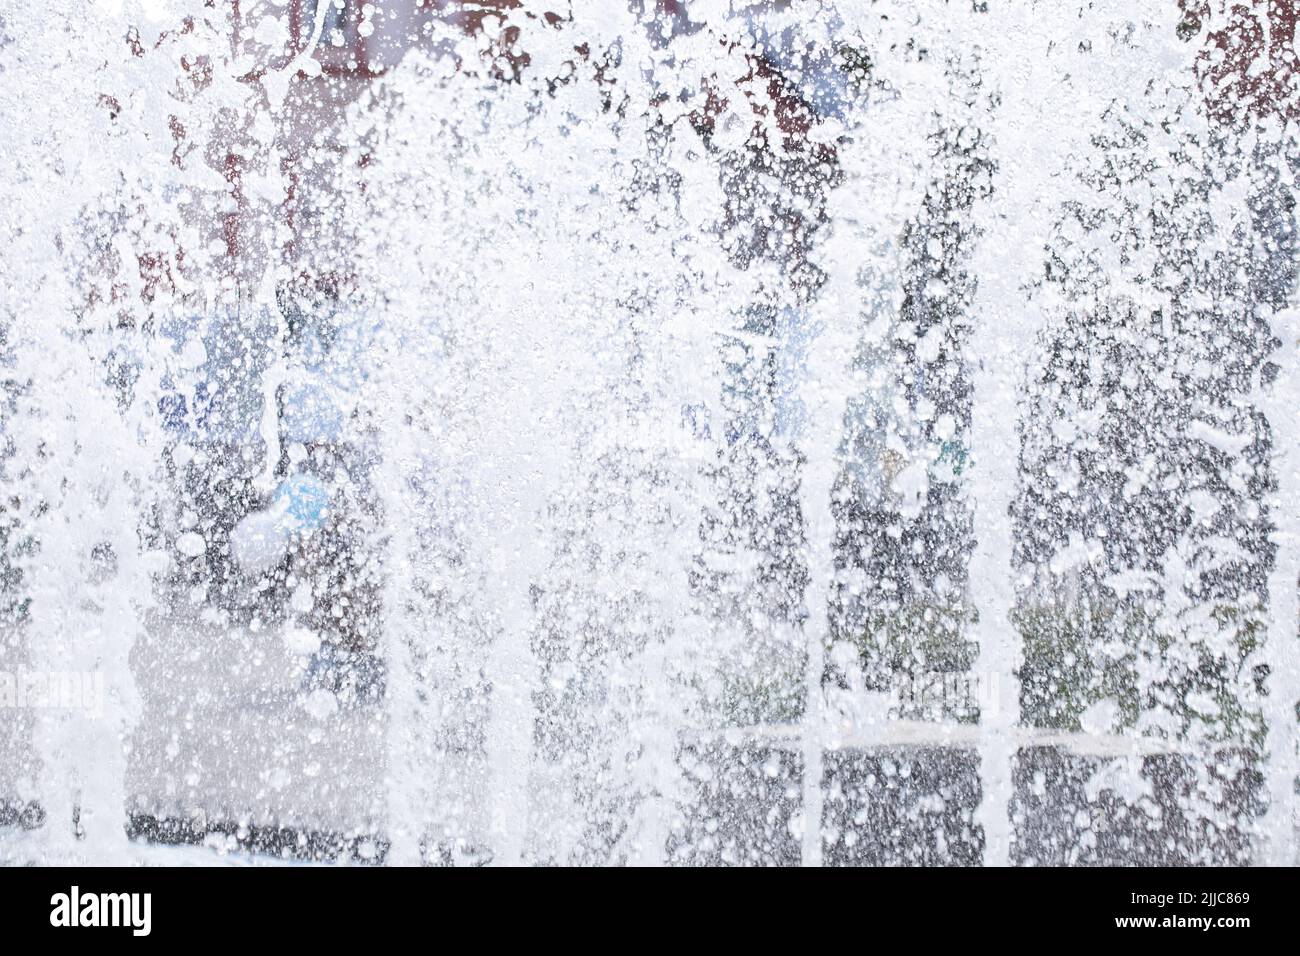 Tröpfchen, Spritzer von frischem, sprudelndem Wasser in einem Springbrunnen - Posen, Polen. Stockfoto